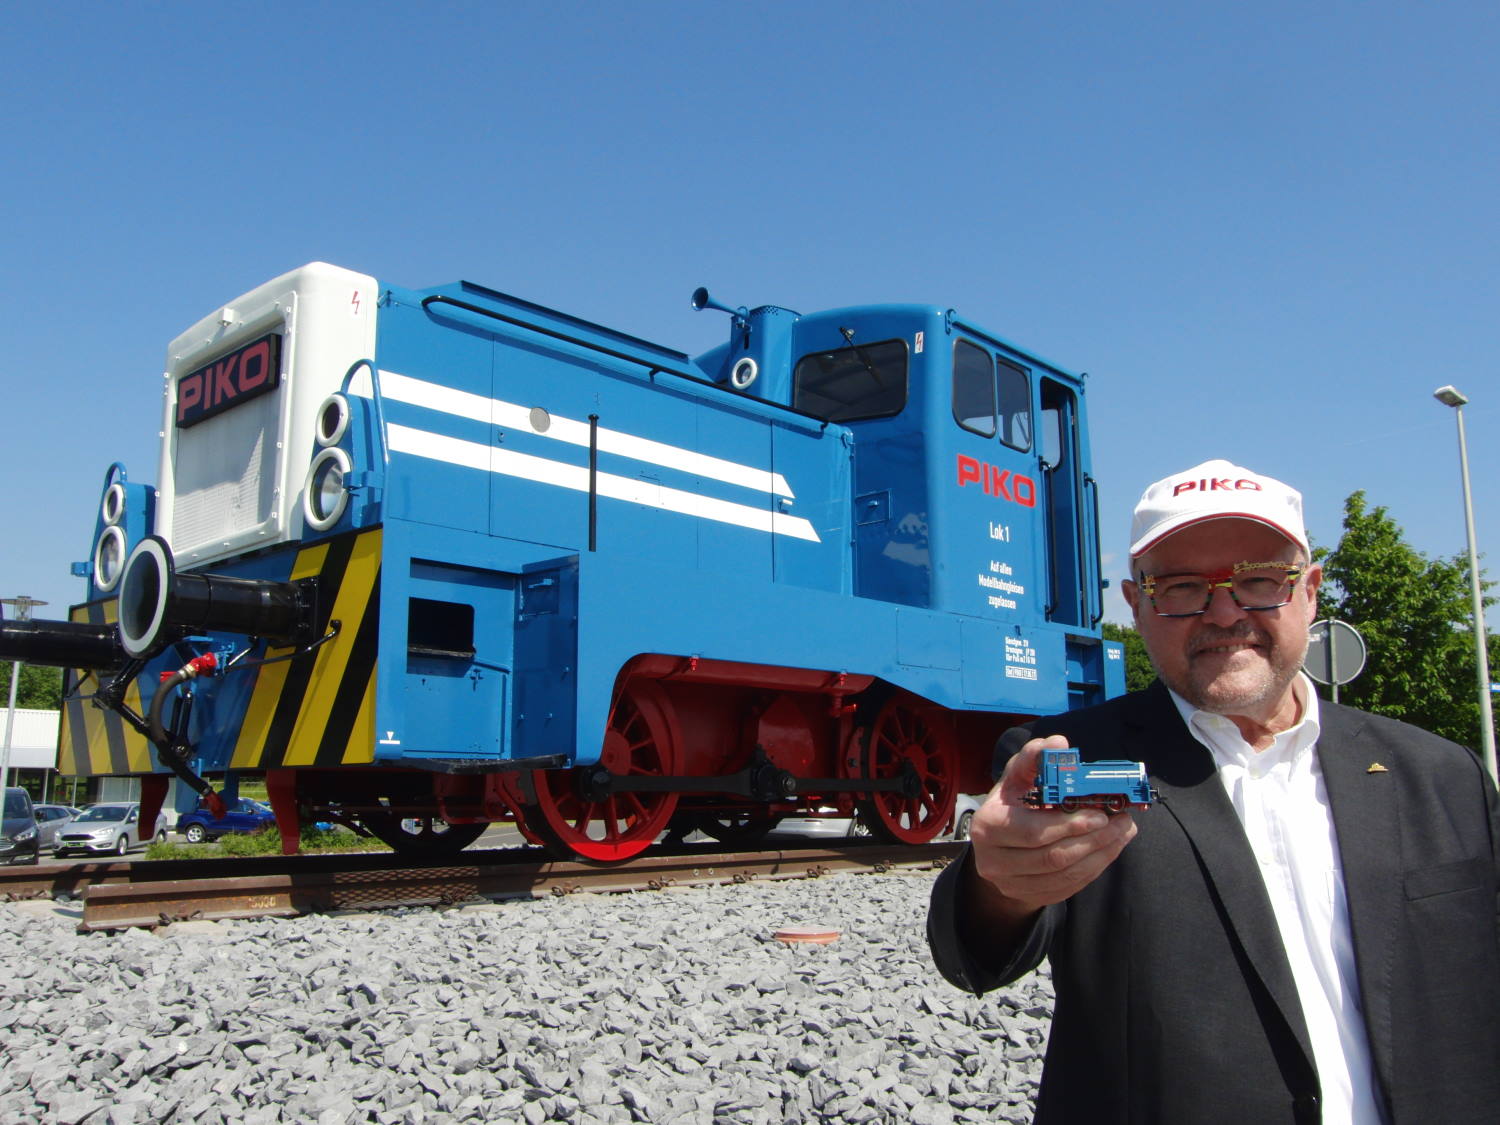 Am Ende der Einweihungsfeier der PIKO Kreisel-Lok stellte sich Herr Dr. Ren F Wilfer mit dem H0 Modell in der Hand vor die groe Lok.